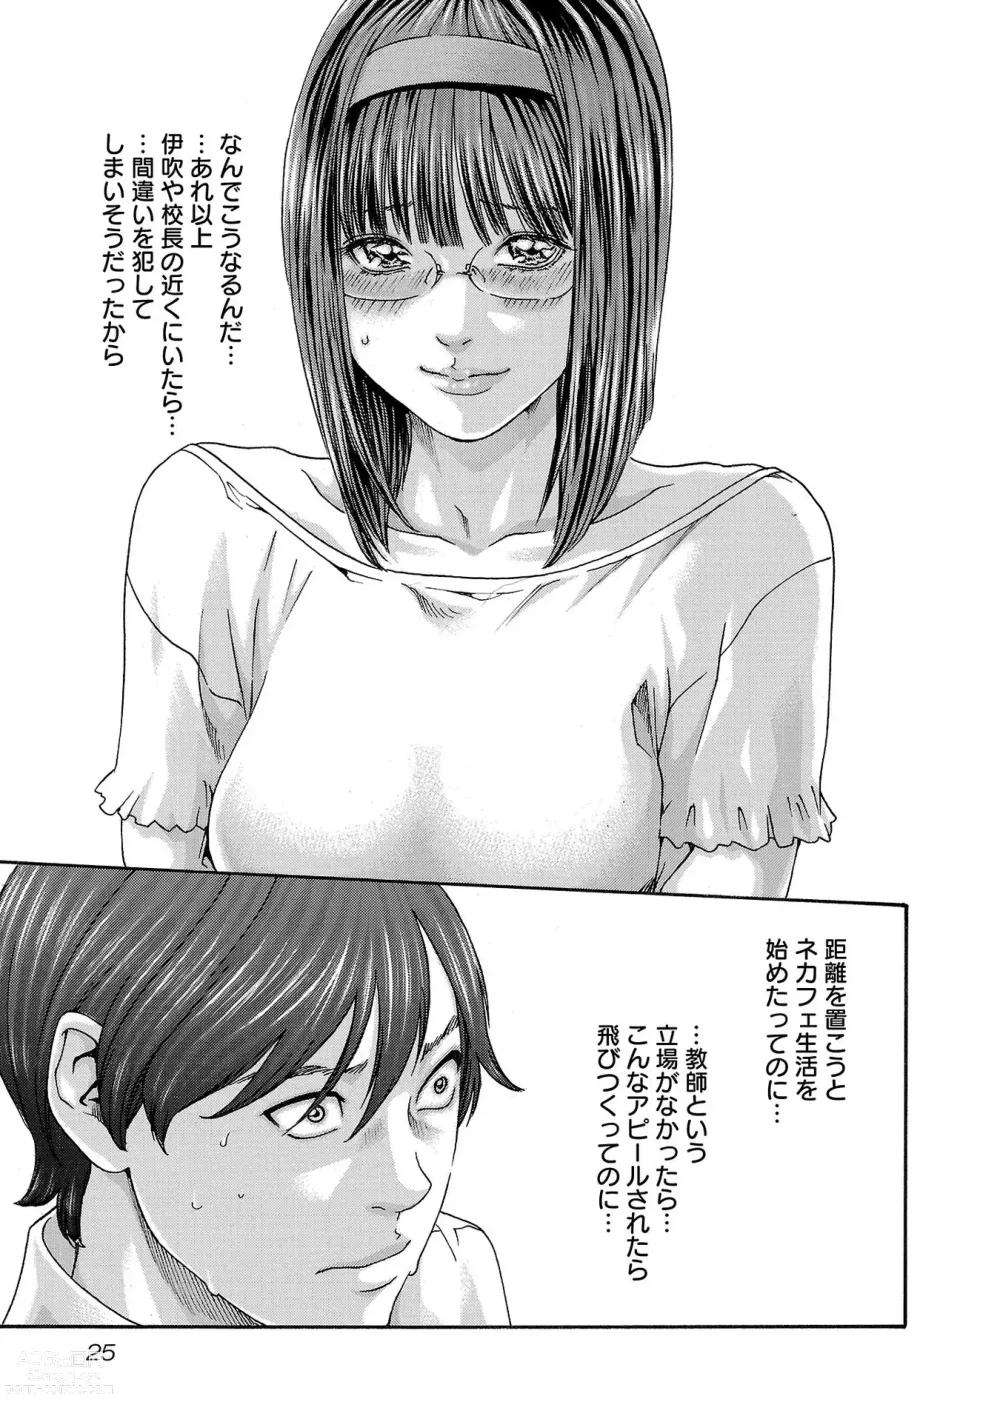 Page 26 of manga sense volume 13